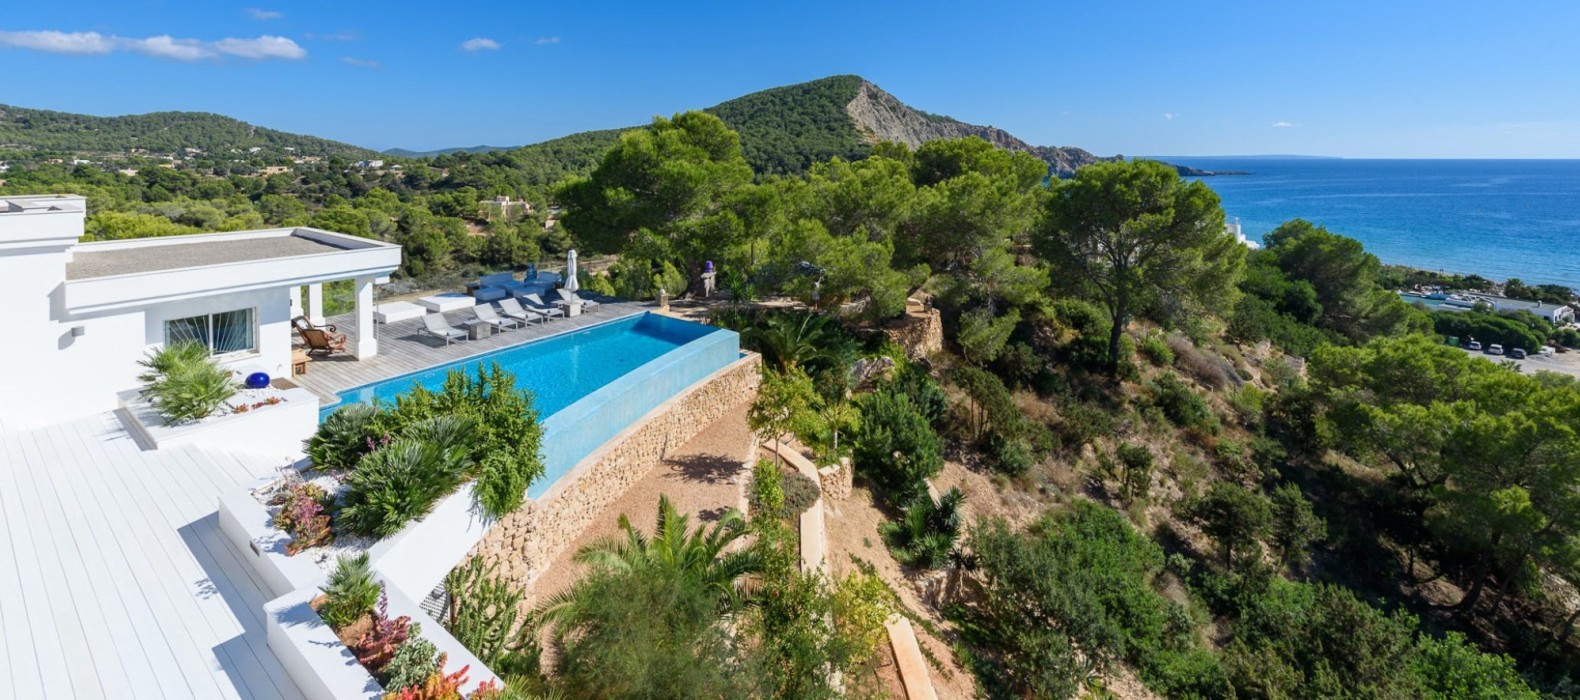 Exterior view of Villa Blue Dreams in Ibiza